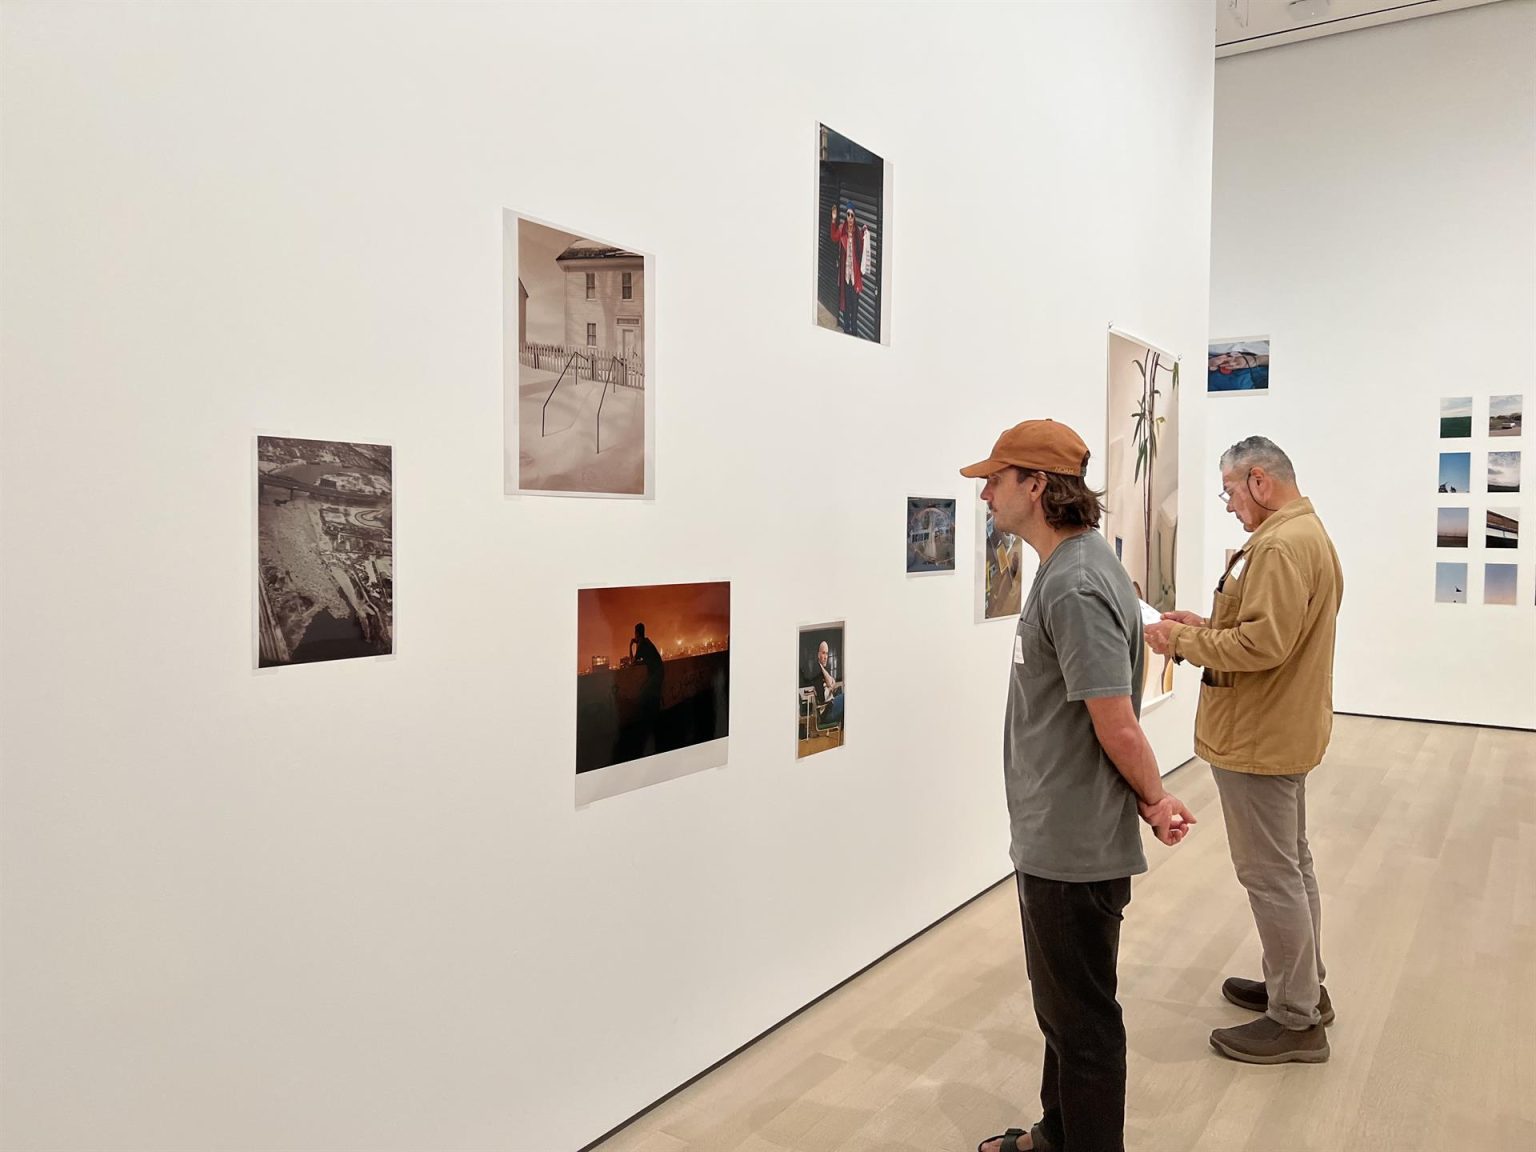 Personas observan unas fotografías del alemán Wolfang Tillmans durante un pase de prensa para su exposición multimedia "To Look Without Fear", hoy en el Museo de Arte Contemporáneo de Nueva York (MoMA) (EE. UU). EFE/Sarah Yañez-Richards